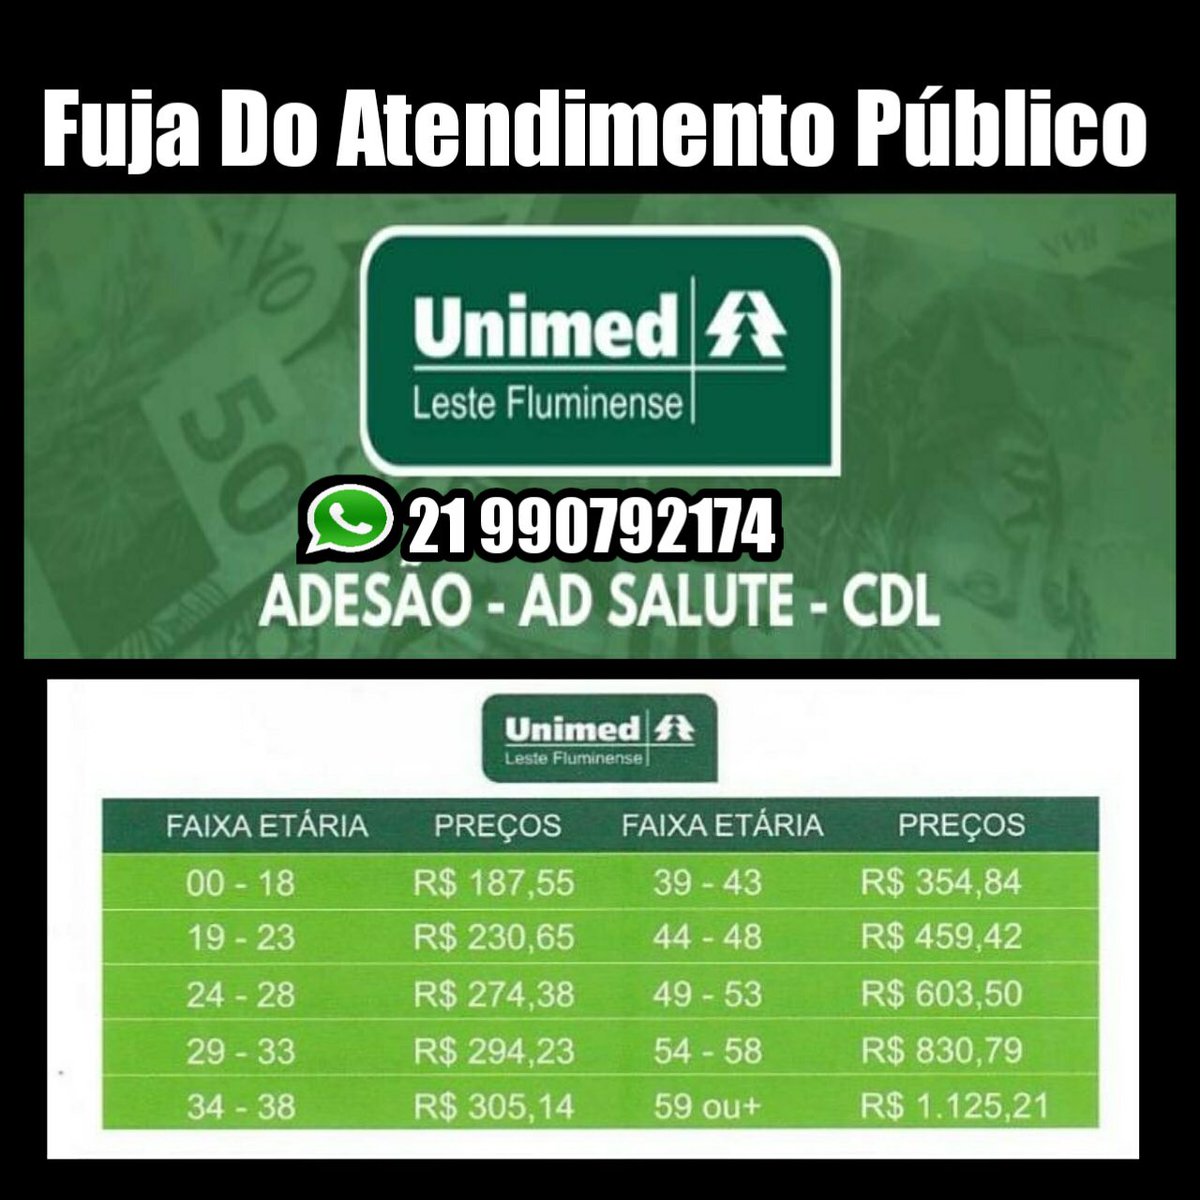 Rede Unimed Leste Fluminense, PDF, Brazil